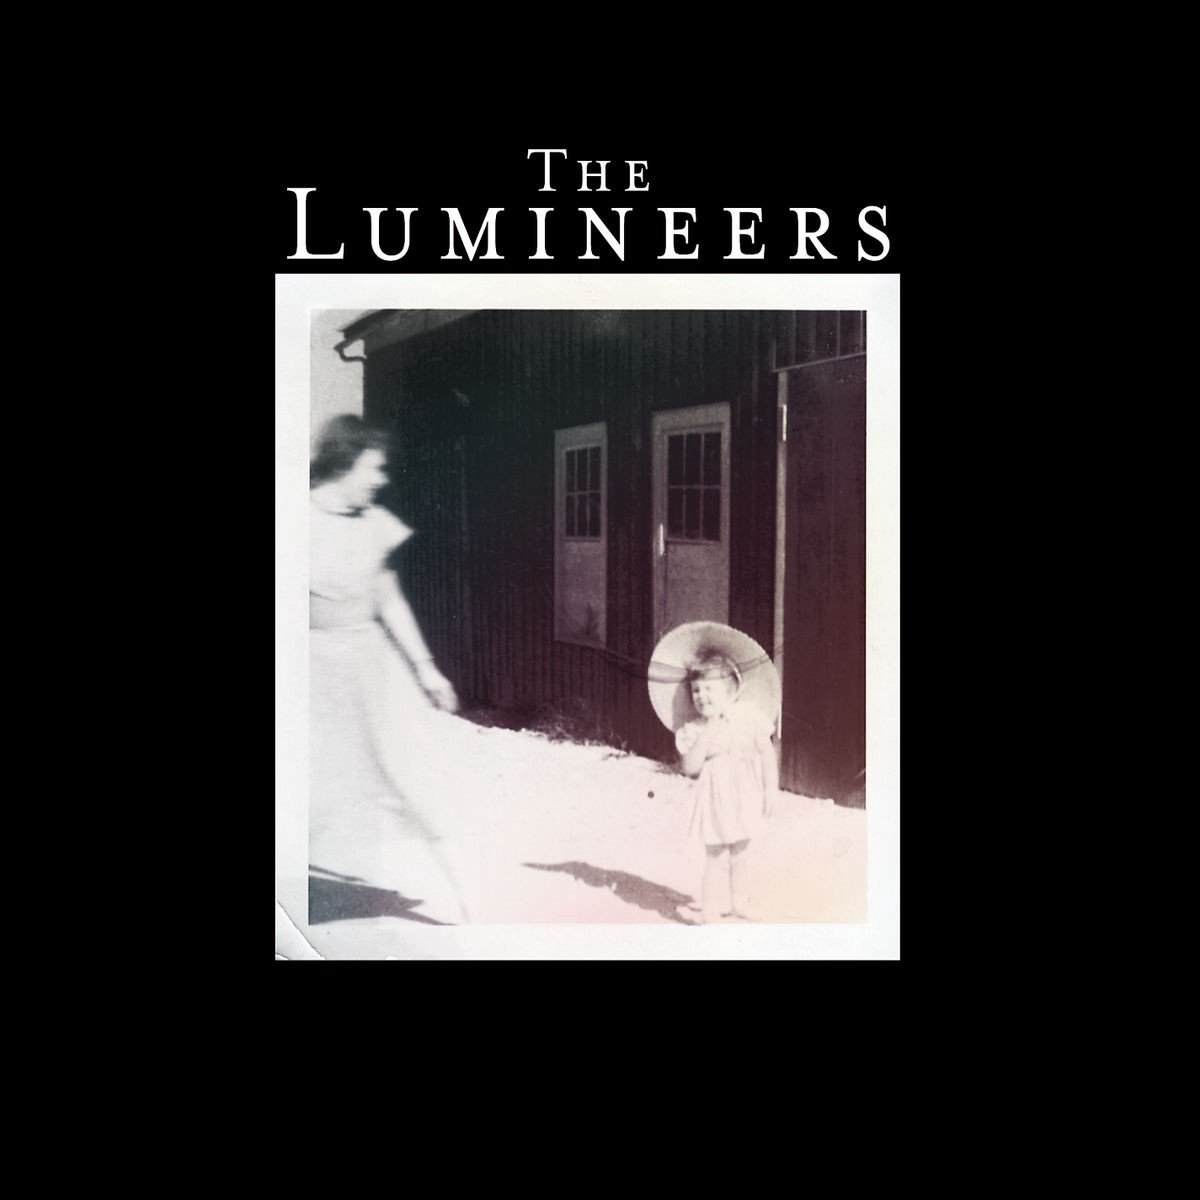 The Lumineers - The Lumineers (LP) - The Lumineers